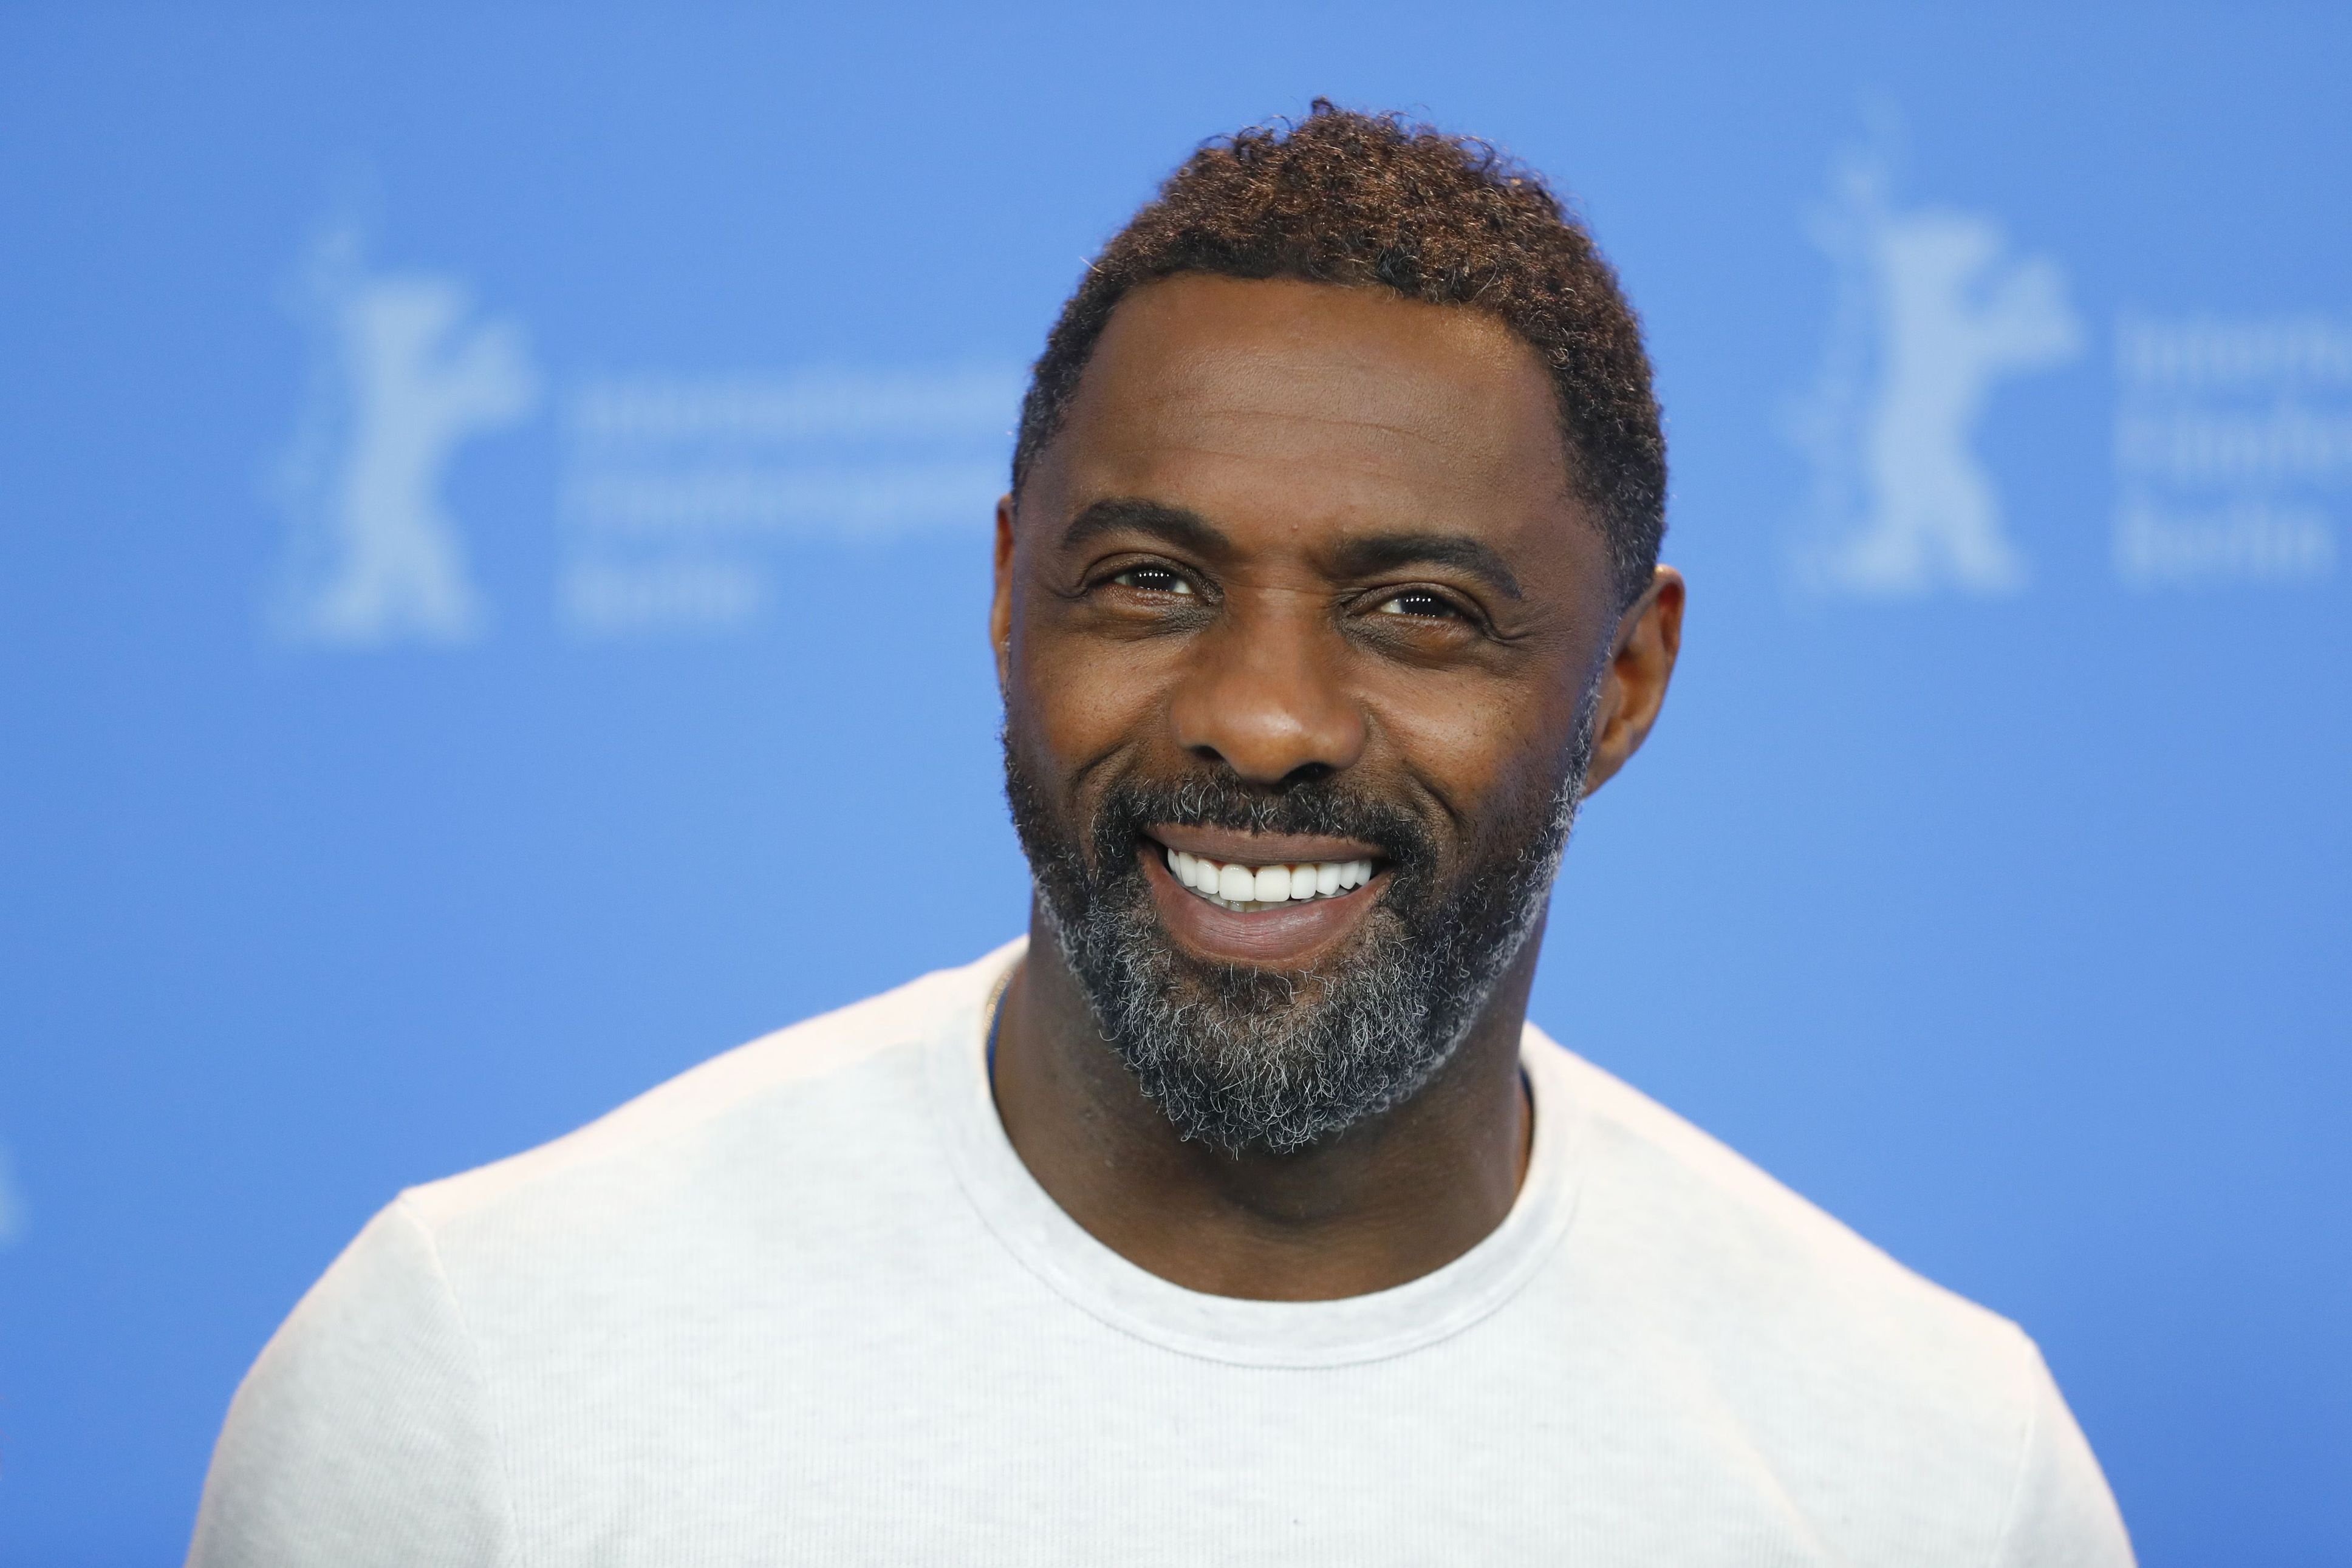 Ator Idris Elba, de Thor, pode substituir Daniel Craig em